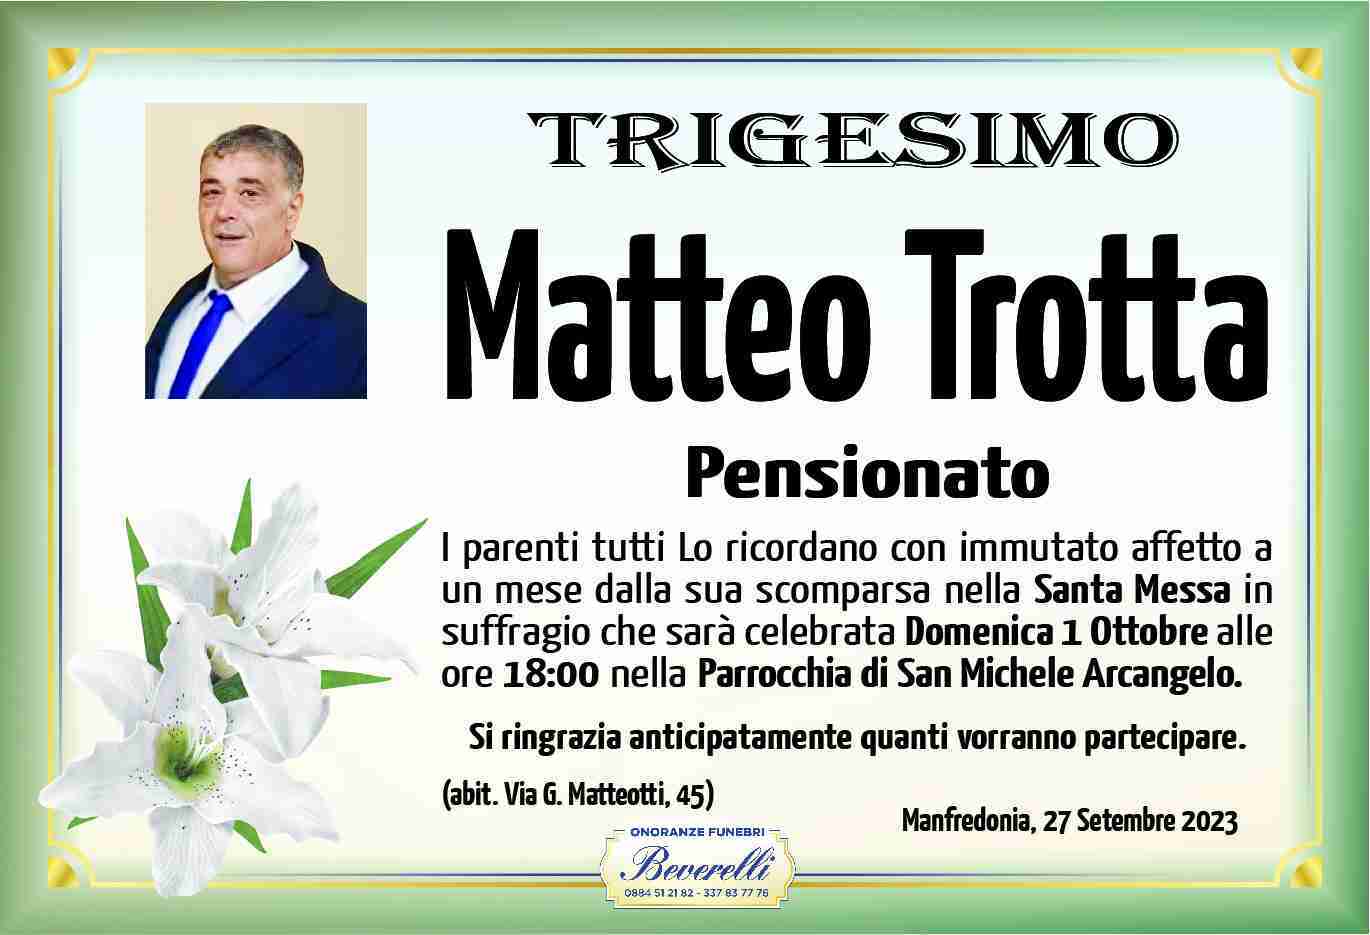 Matteo Trotta